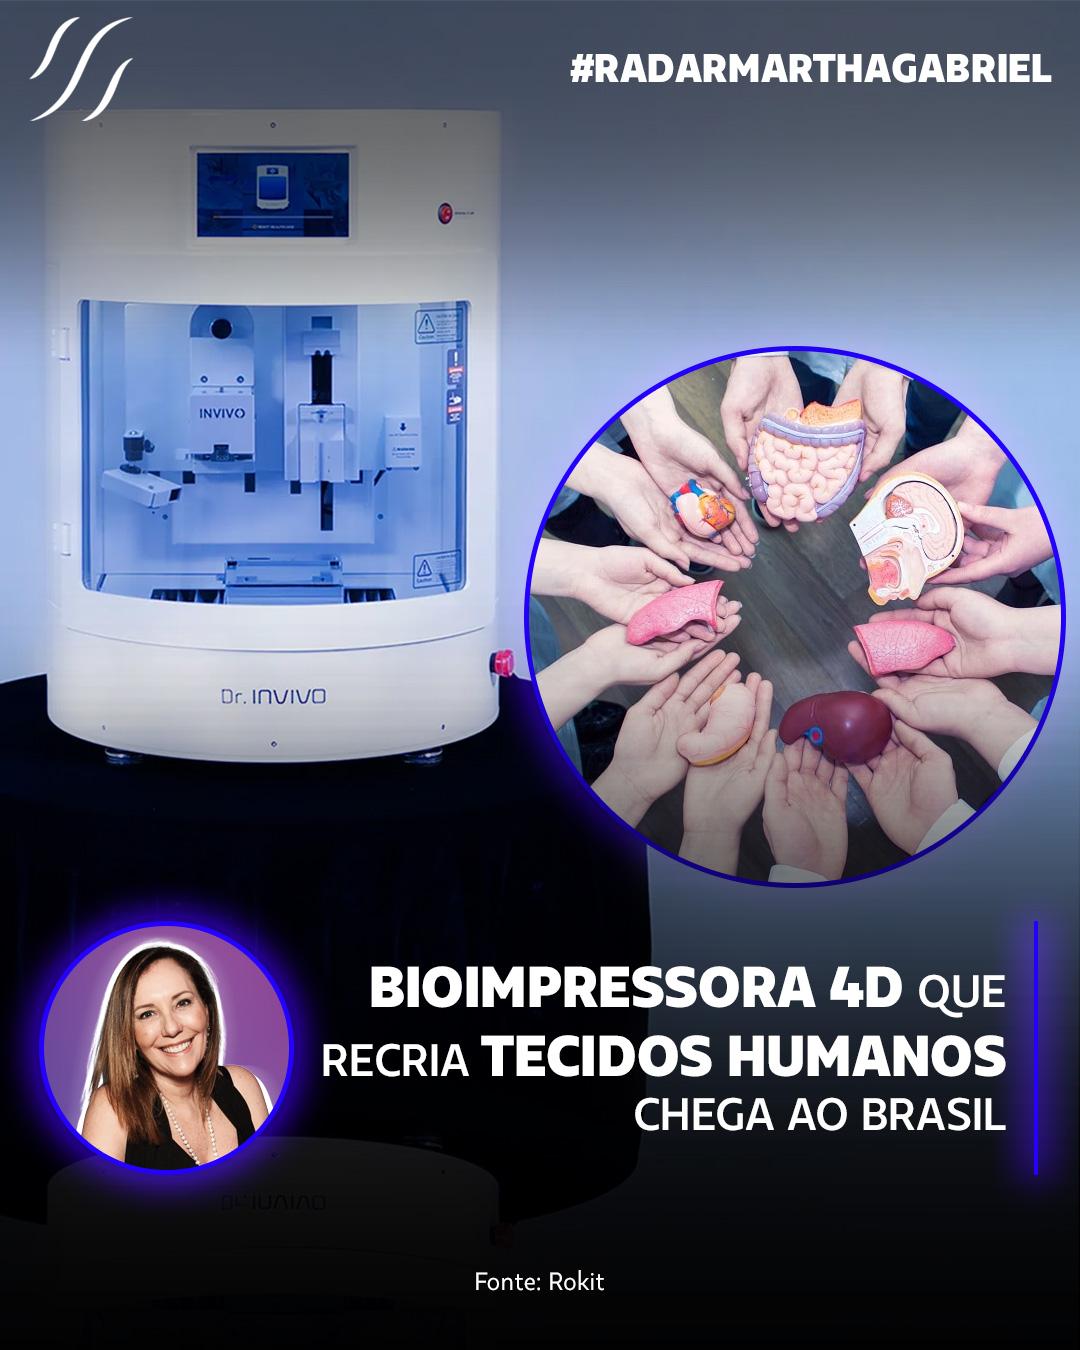 Bioimpressora 4D que recria tecidos humanos chega ao Brasil